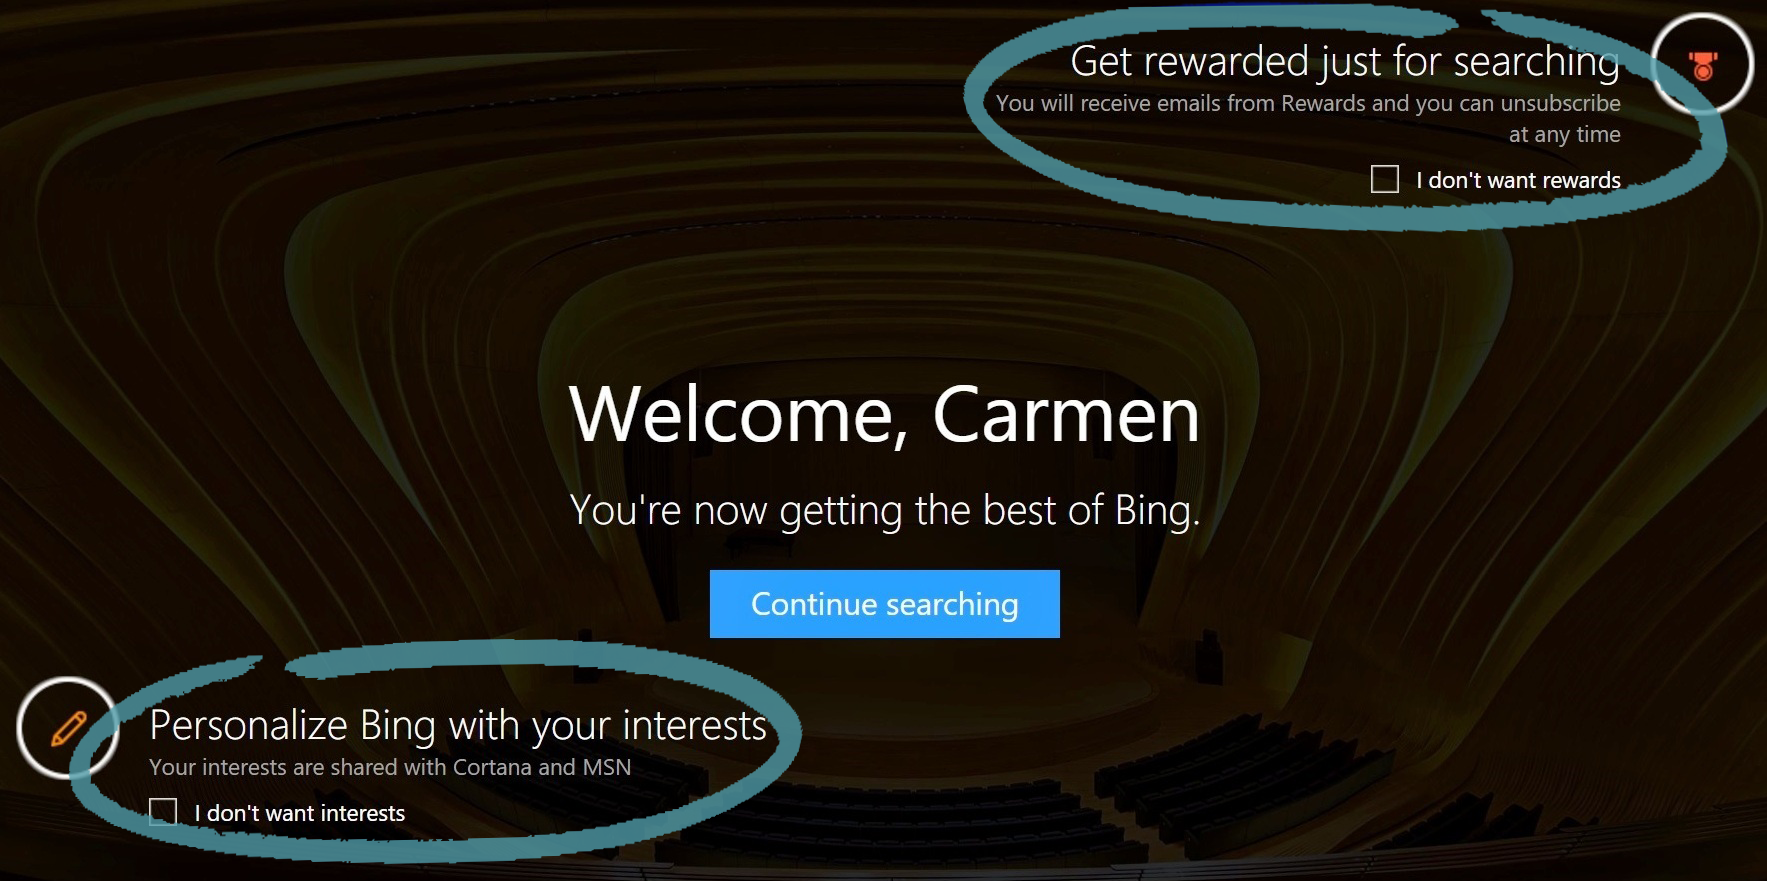 Началната страница на Bing с опция за записване за Награди и Интереси